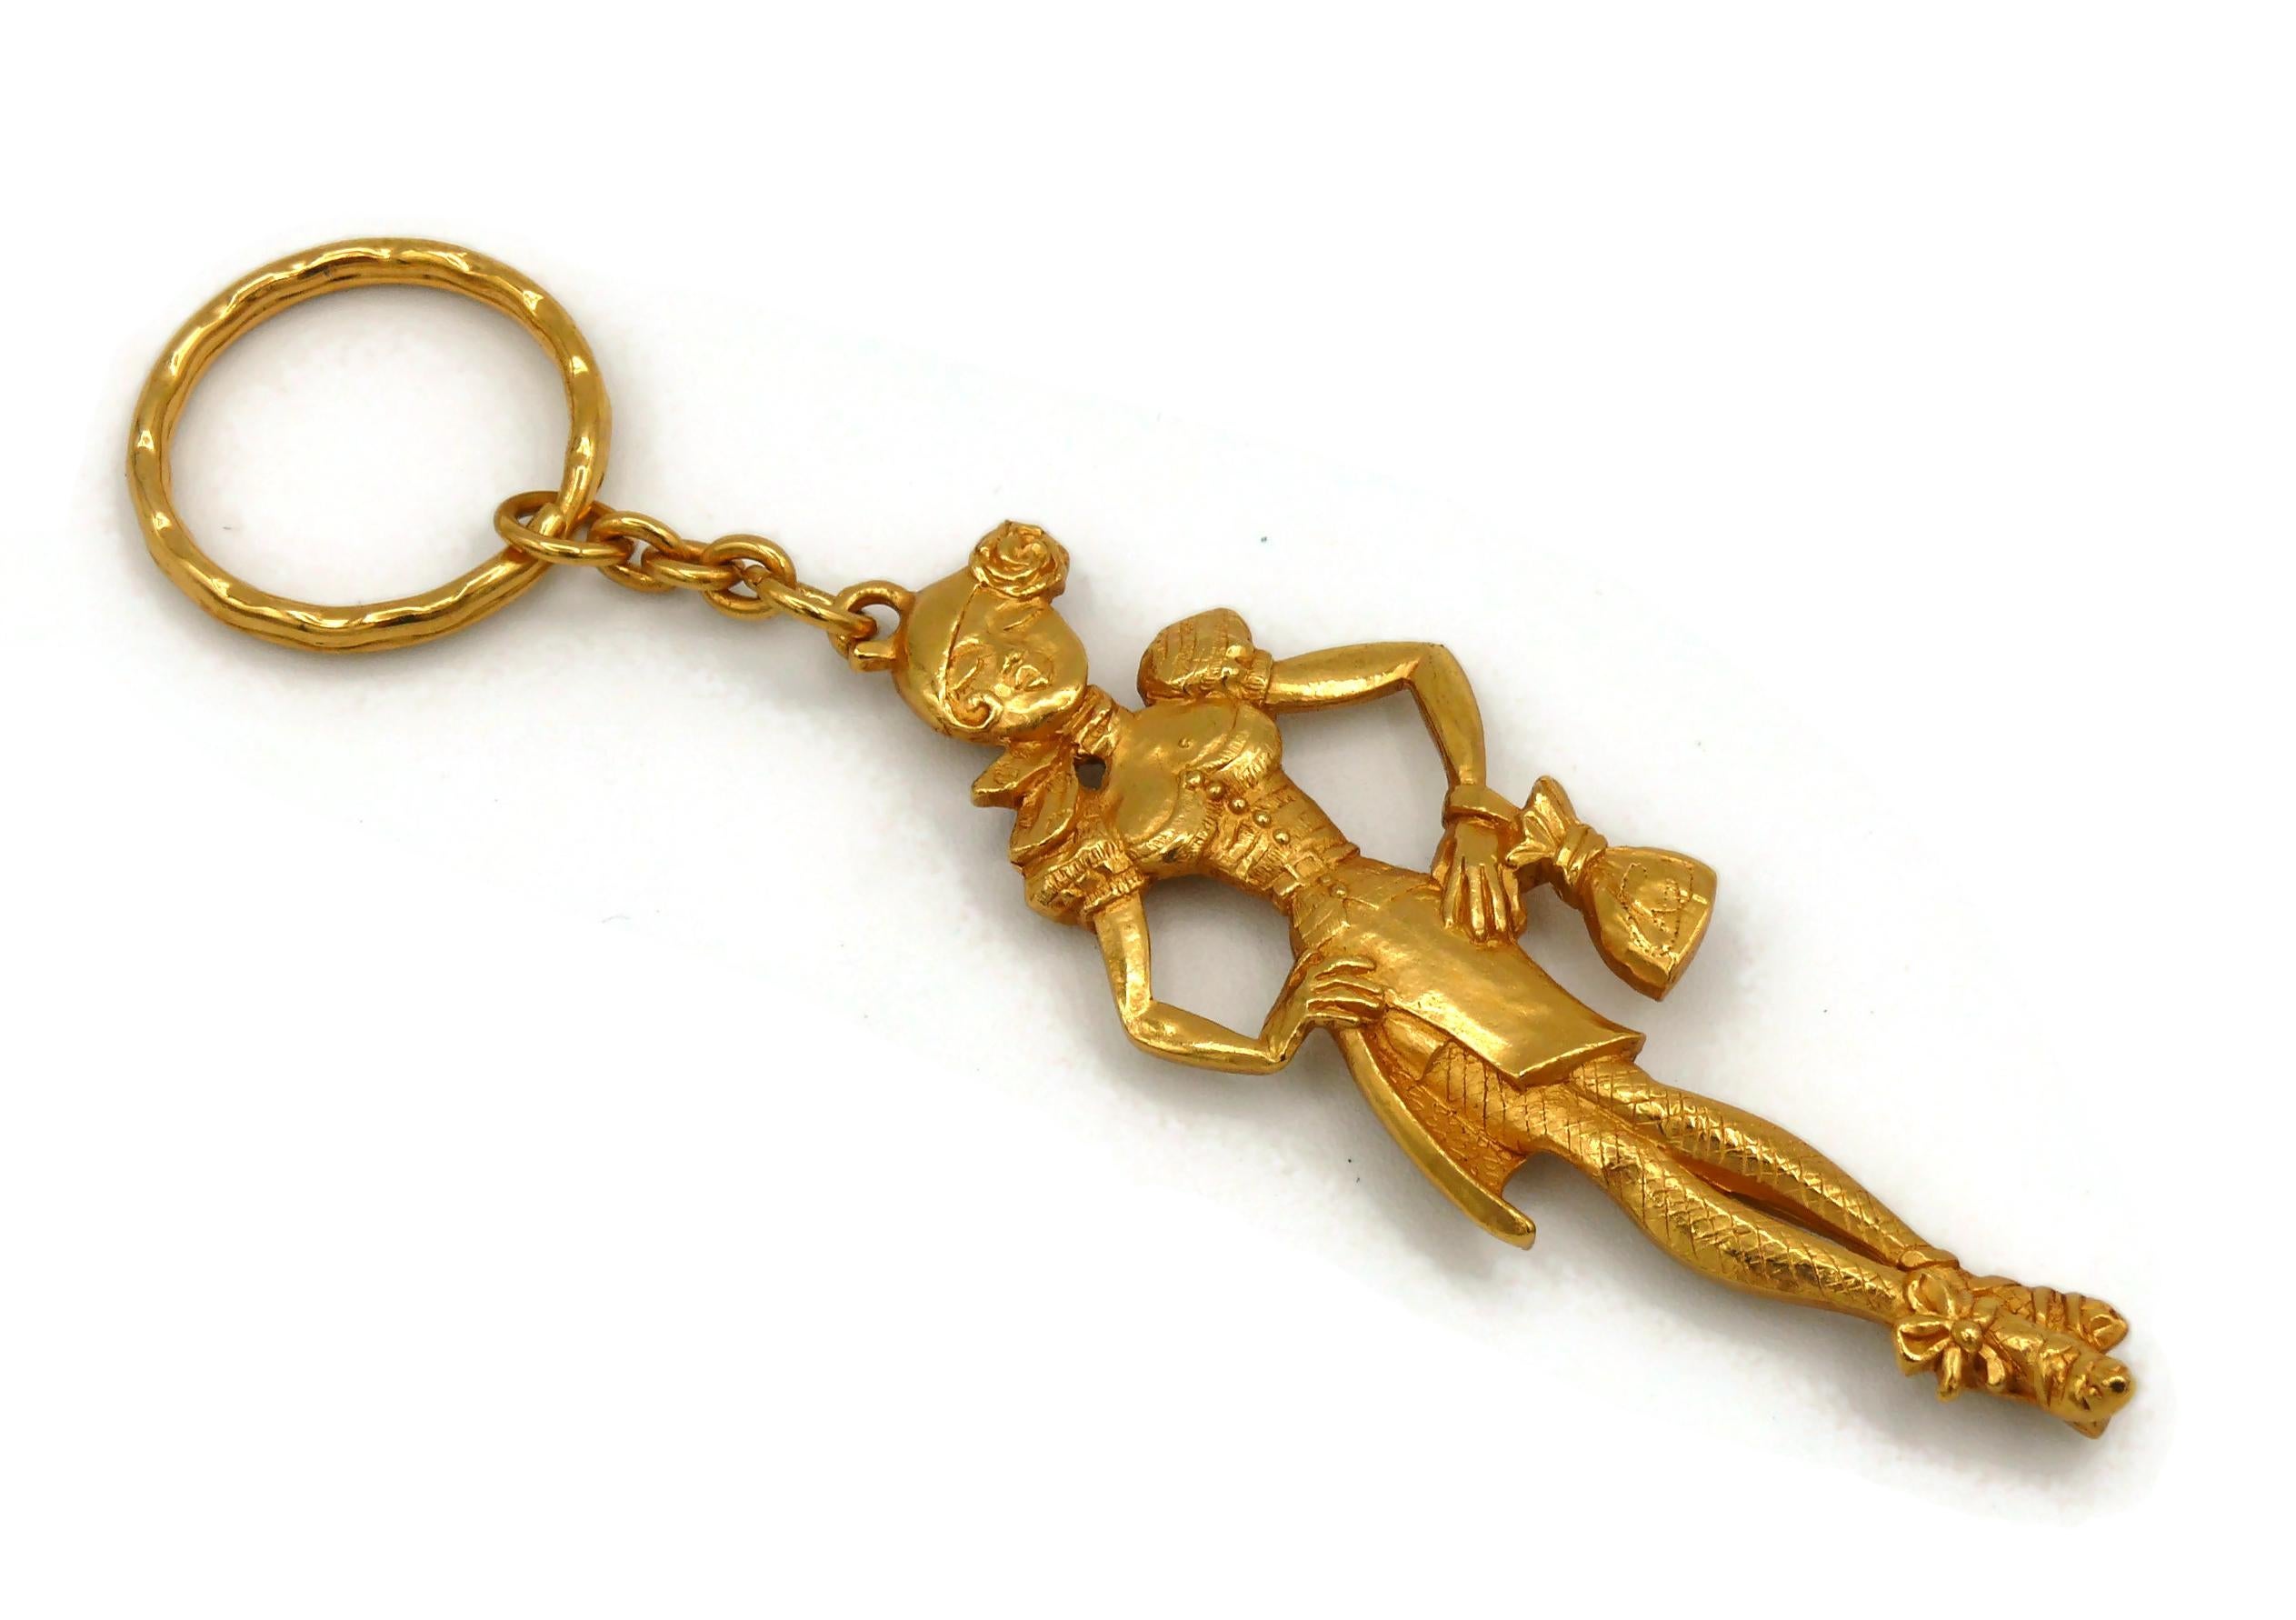 CHRISTIAN LACROIX vintage figuraler ARLETY goldfarbener Schlüsselanhänger / Taschenanhänger.

Geprägter CL Made in France.

Ungefähre Maße : Gesamtlänge ca. 13,5 cm (5.31 inches) / Dame ca. max. 8.5 cm x max. 3 cm (3,35 Zoll x 1,18